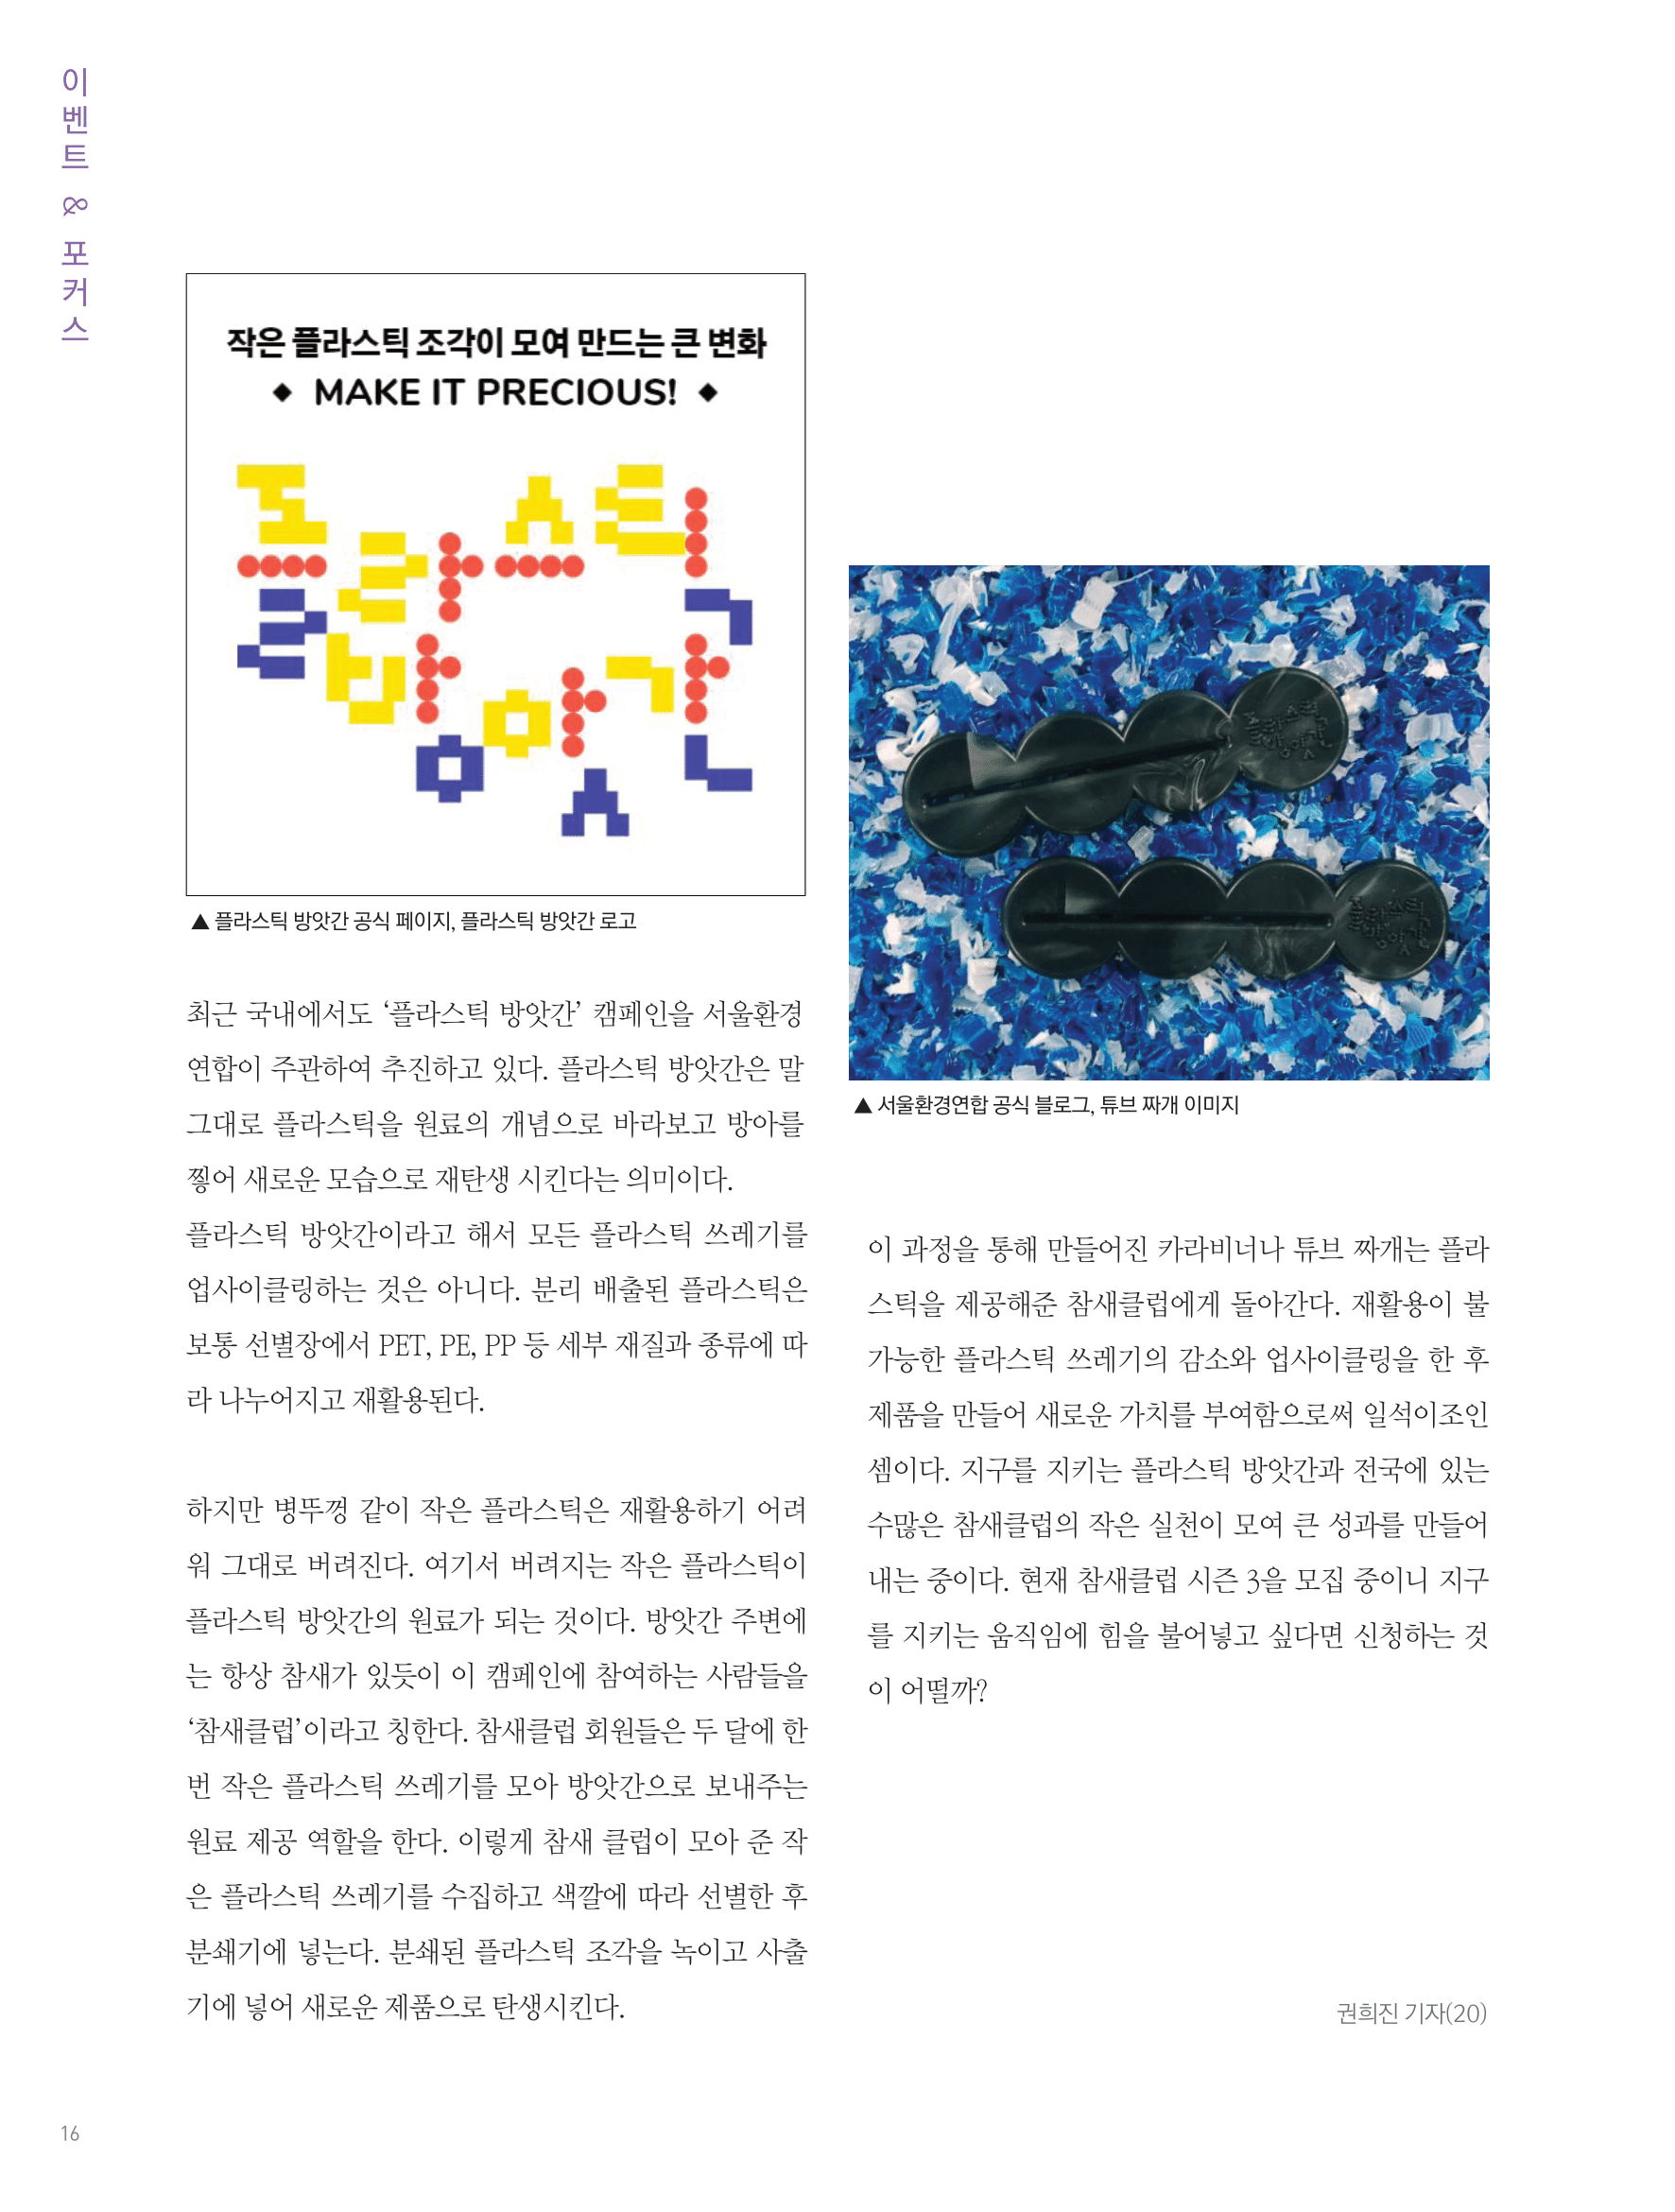 뜻새김 신문 76호 15